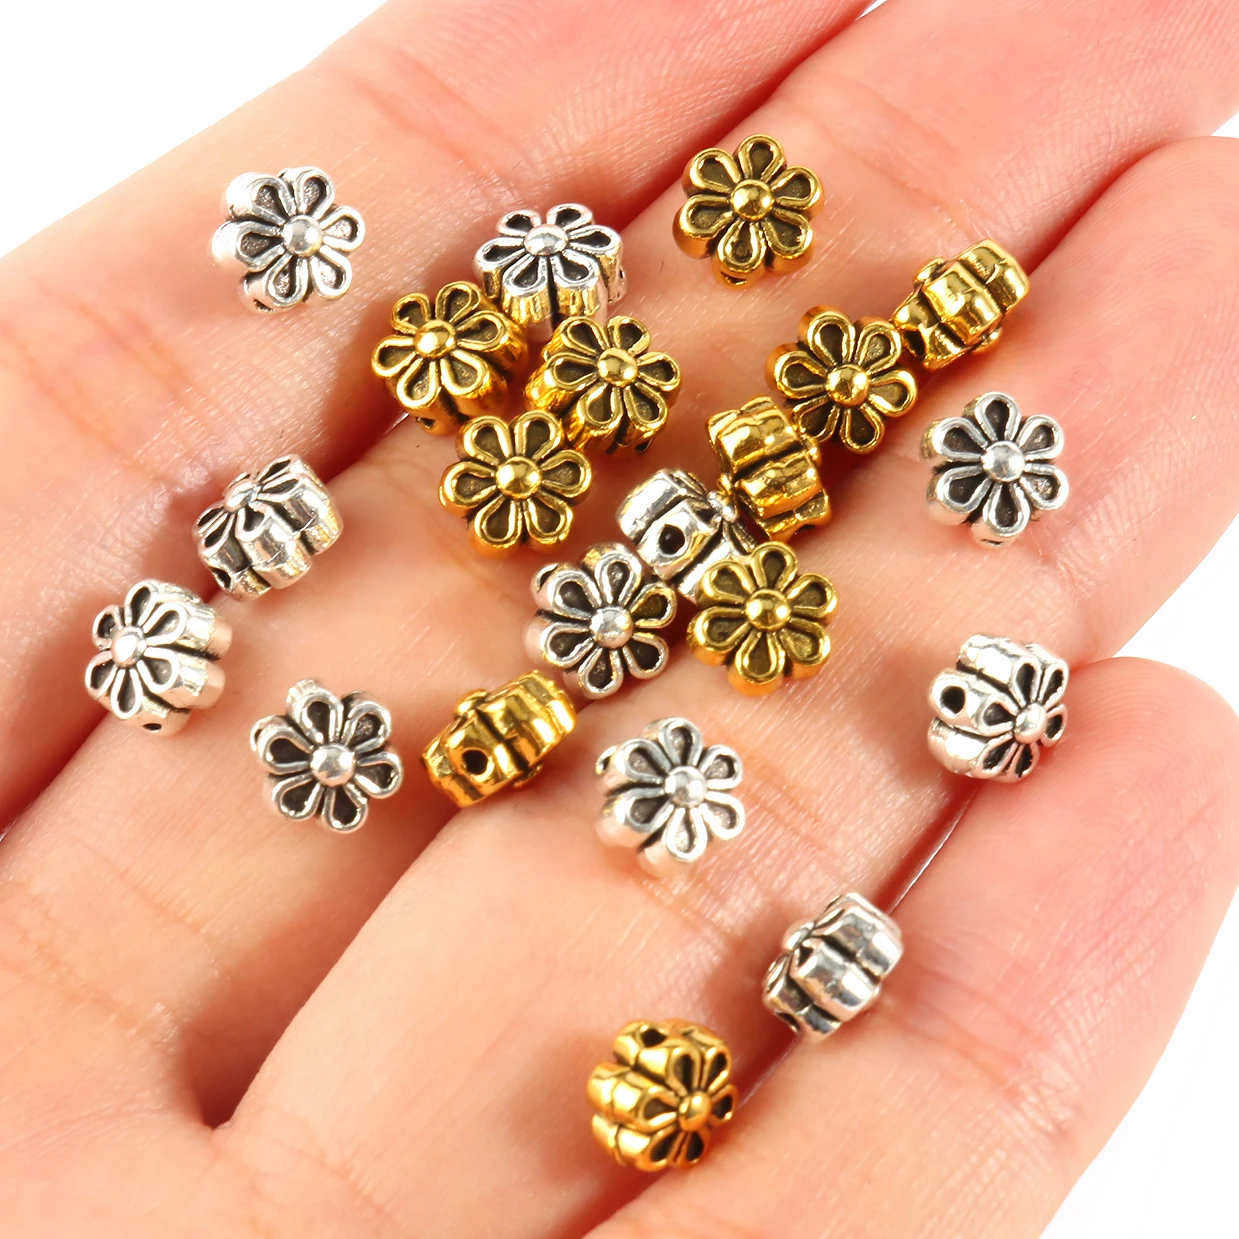 Metall Rondelle Spacer Perlen Gold Farbe Strass Kristall Lose Flache Runde Perlen für Schmuck Machen DIY Armband Zubehör